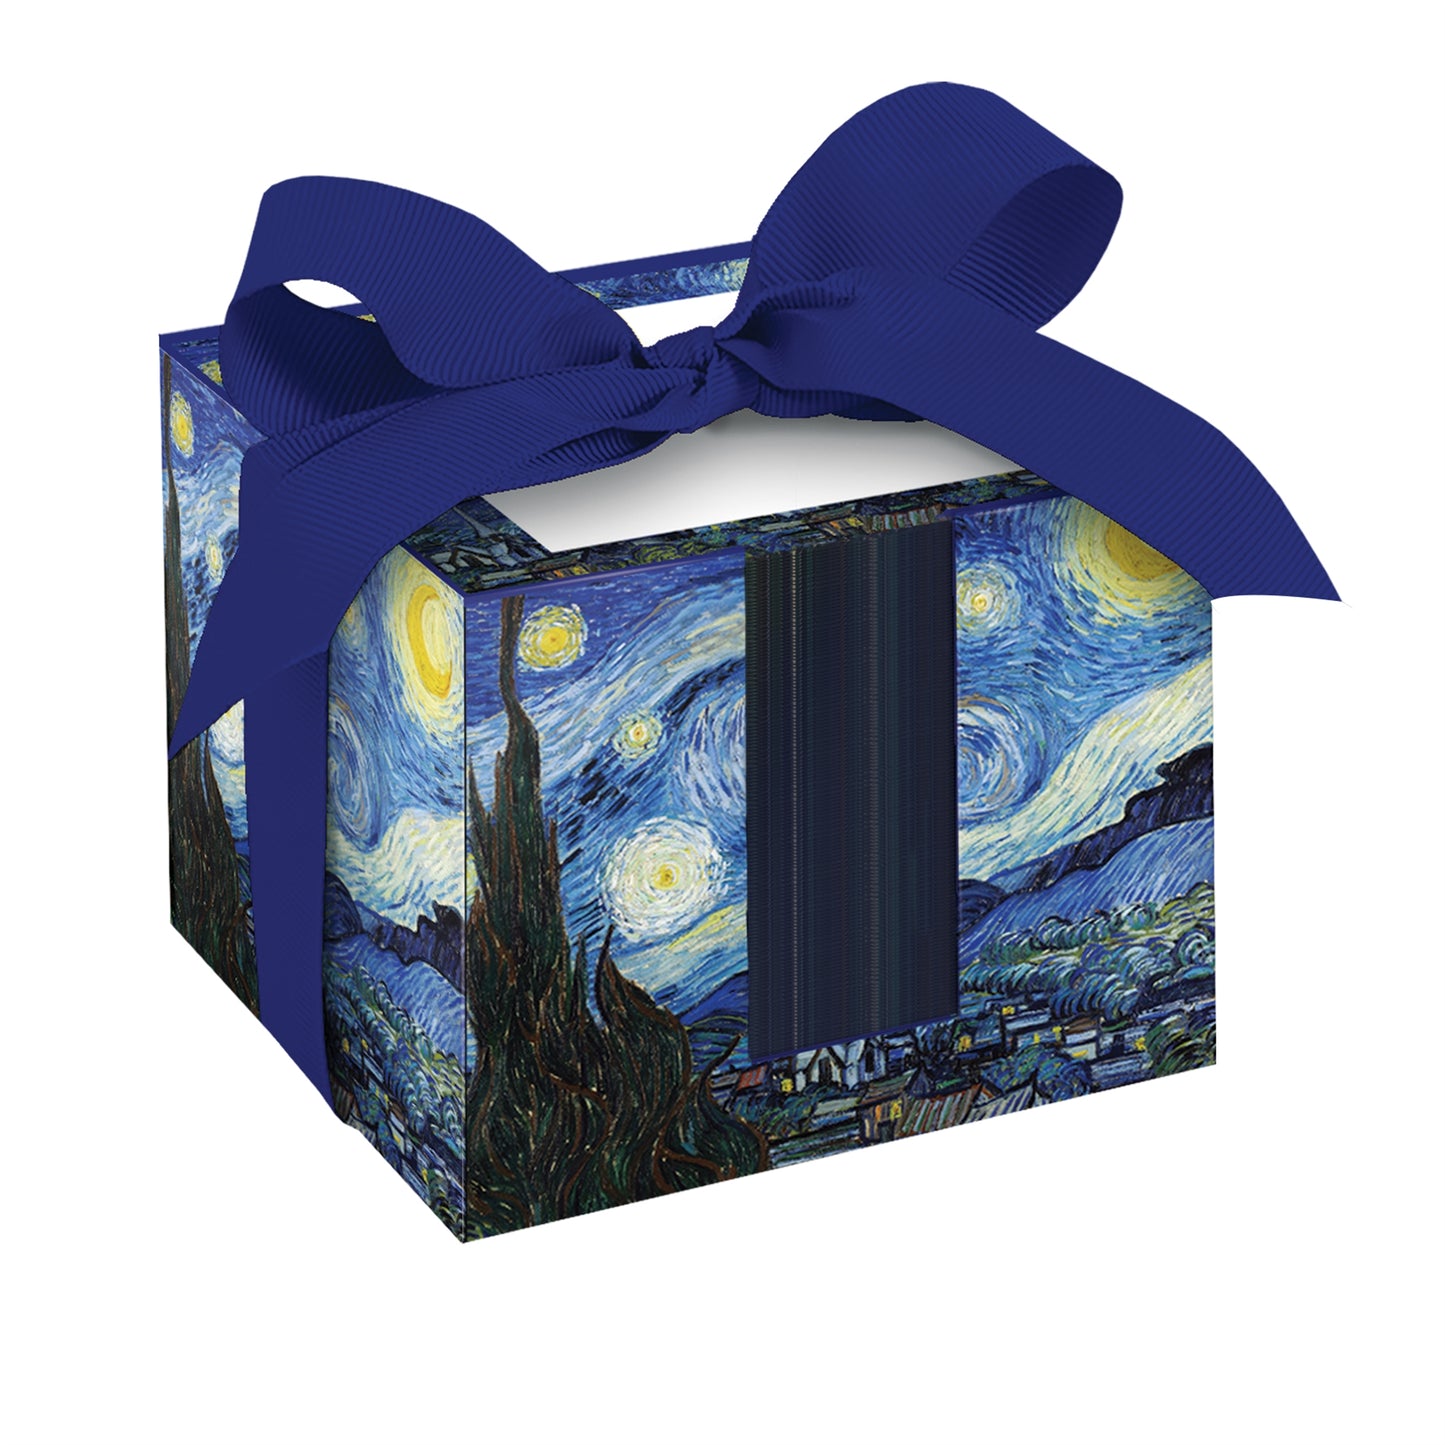 Note Cube: "La noche estrellada" de van Gogh